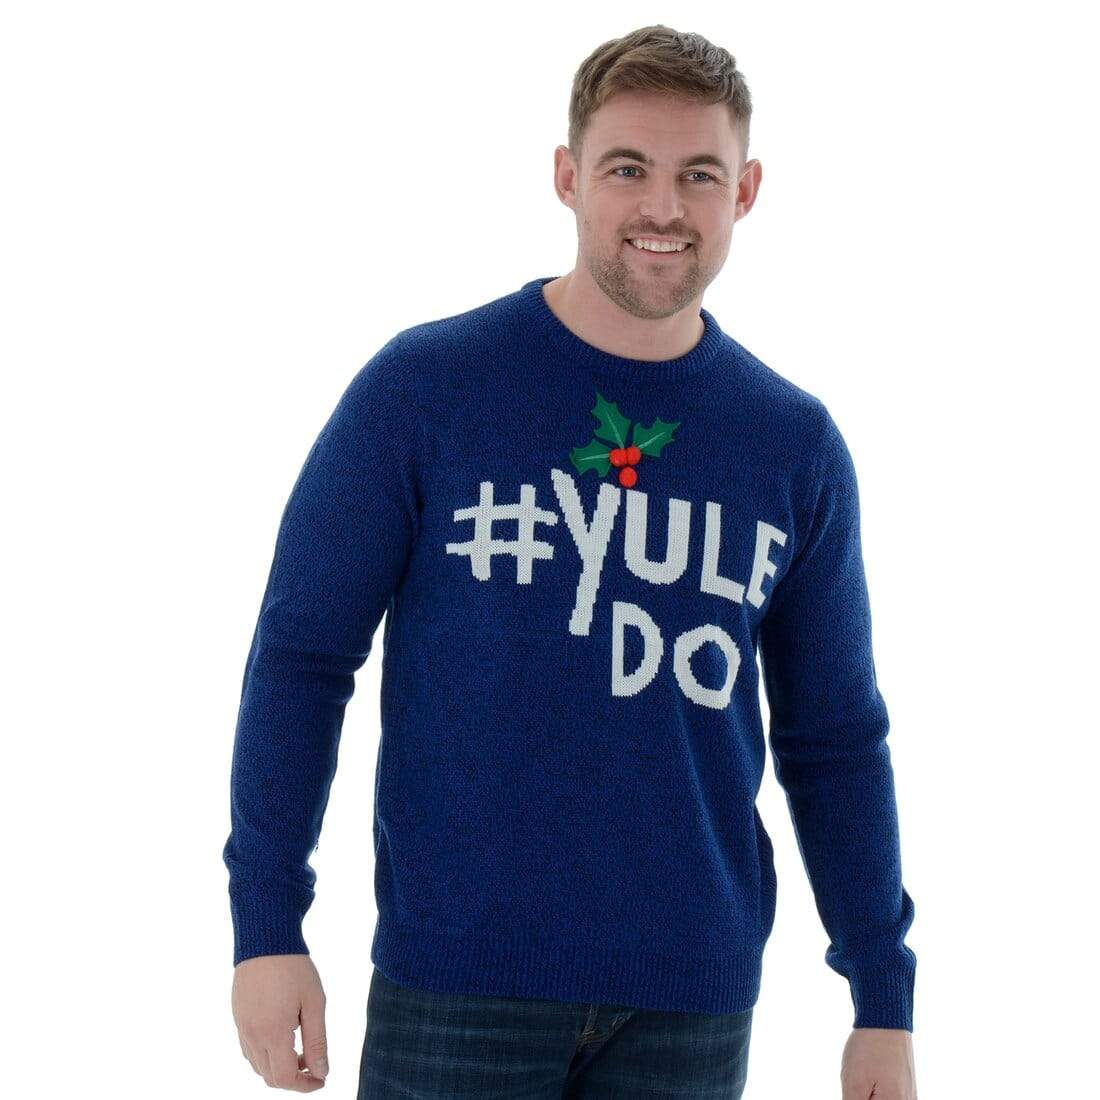 Mr Crimbo Mens Funny Knitted Yule Do Slogan Christmas Jumper - MrCrimbo.co.uk -VISIMX012_C - S -blue xmas jumper